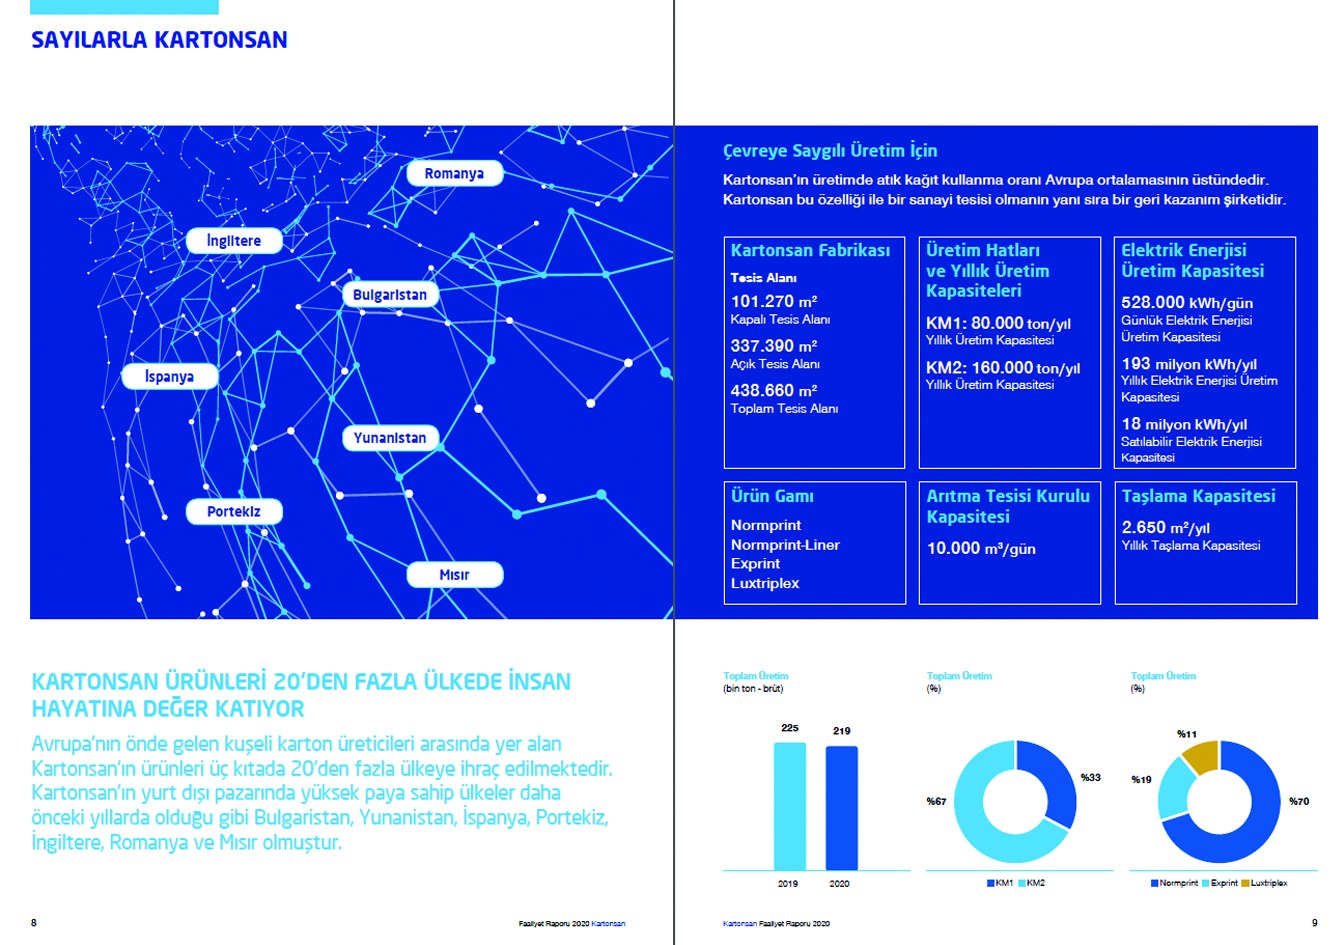 KARTONSAN / 2020 Faaliyet Raporu / 2020 Annual Report